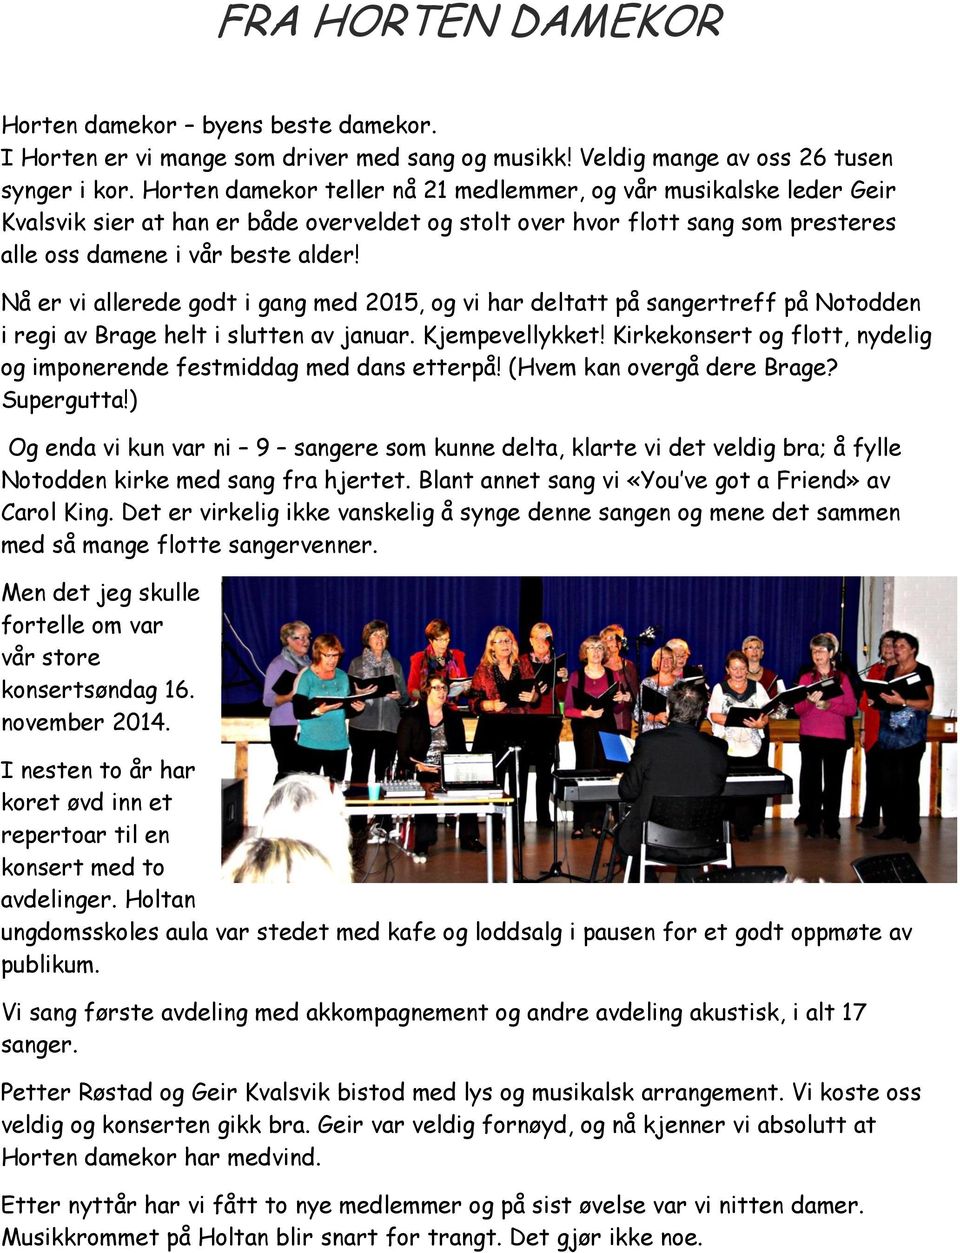 Nå er vi allerede godt i gang med 2015, og vi har deltatt på sangertreff på Notodden i regi av Brage helt i slutten av januar. Kjempevellykket!